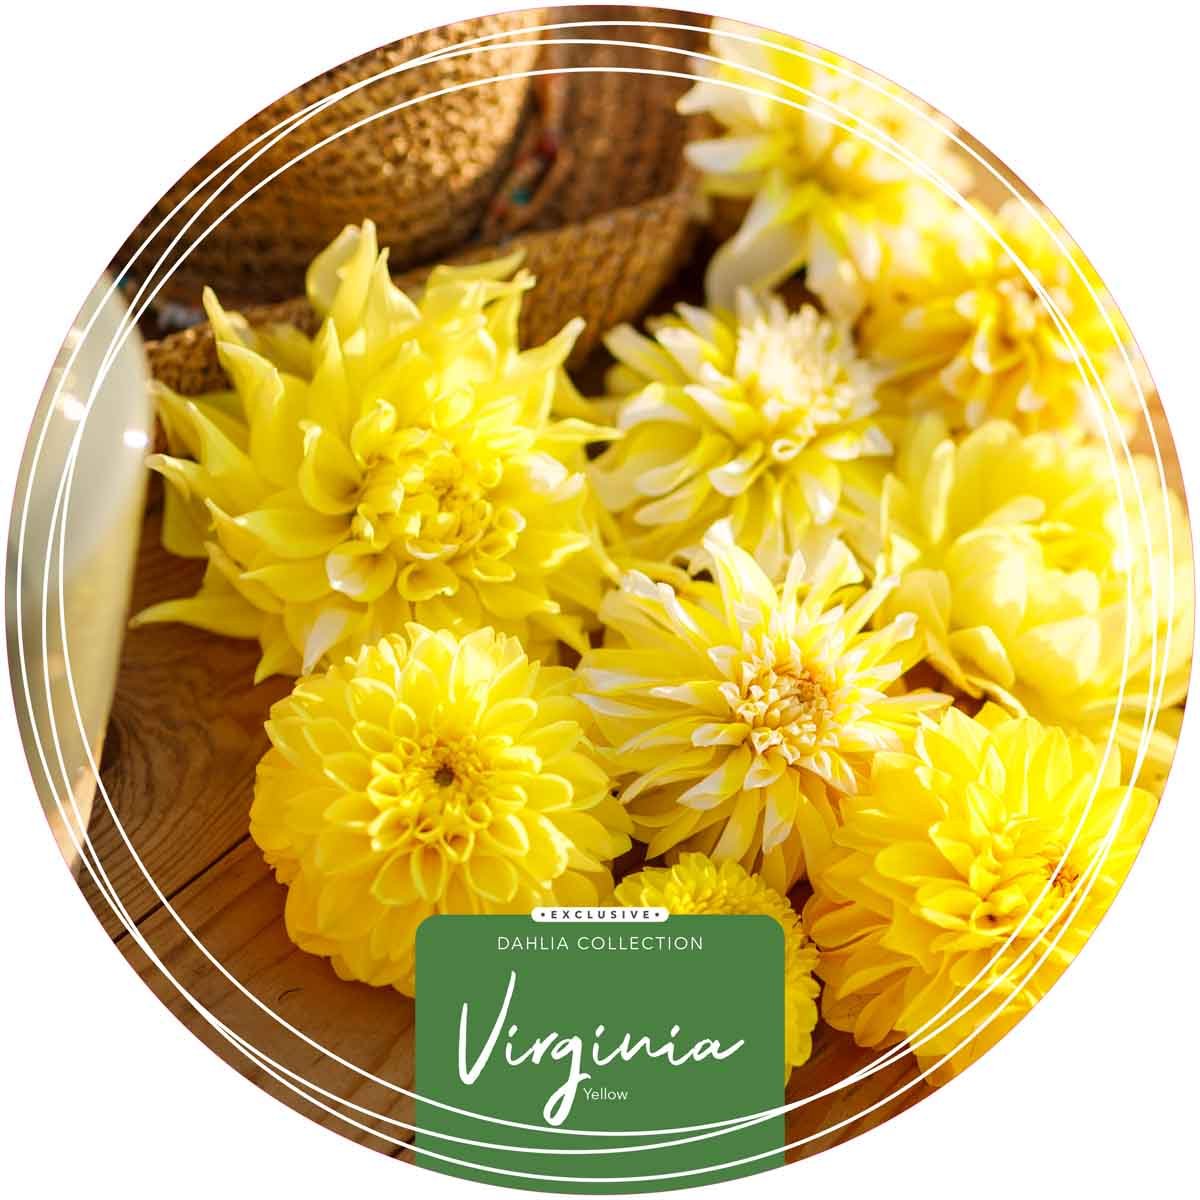 Exclusive Collection Dahlias 'Virginia' - Yellow